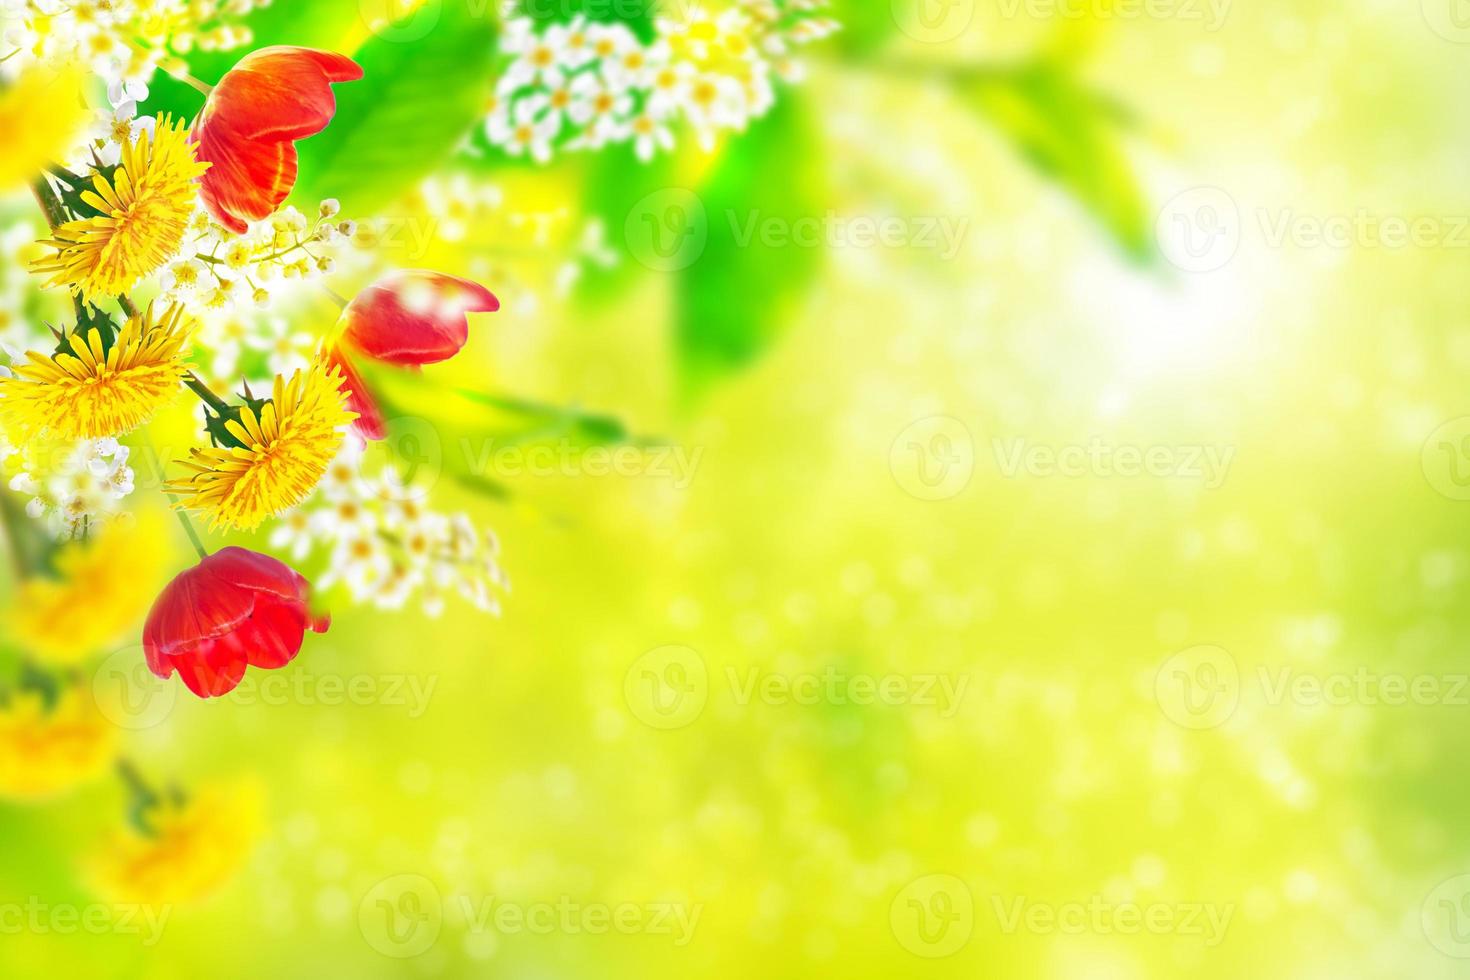 flores de primavera de colores brillantes foto